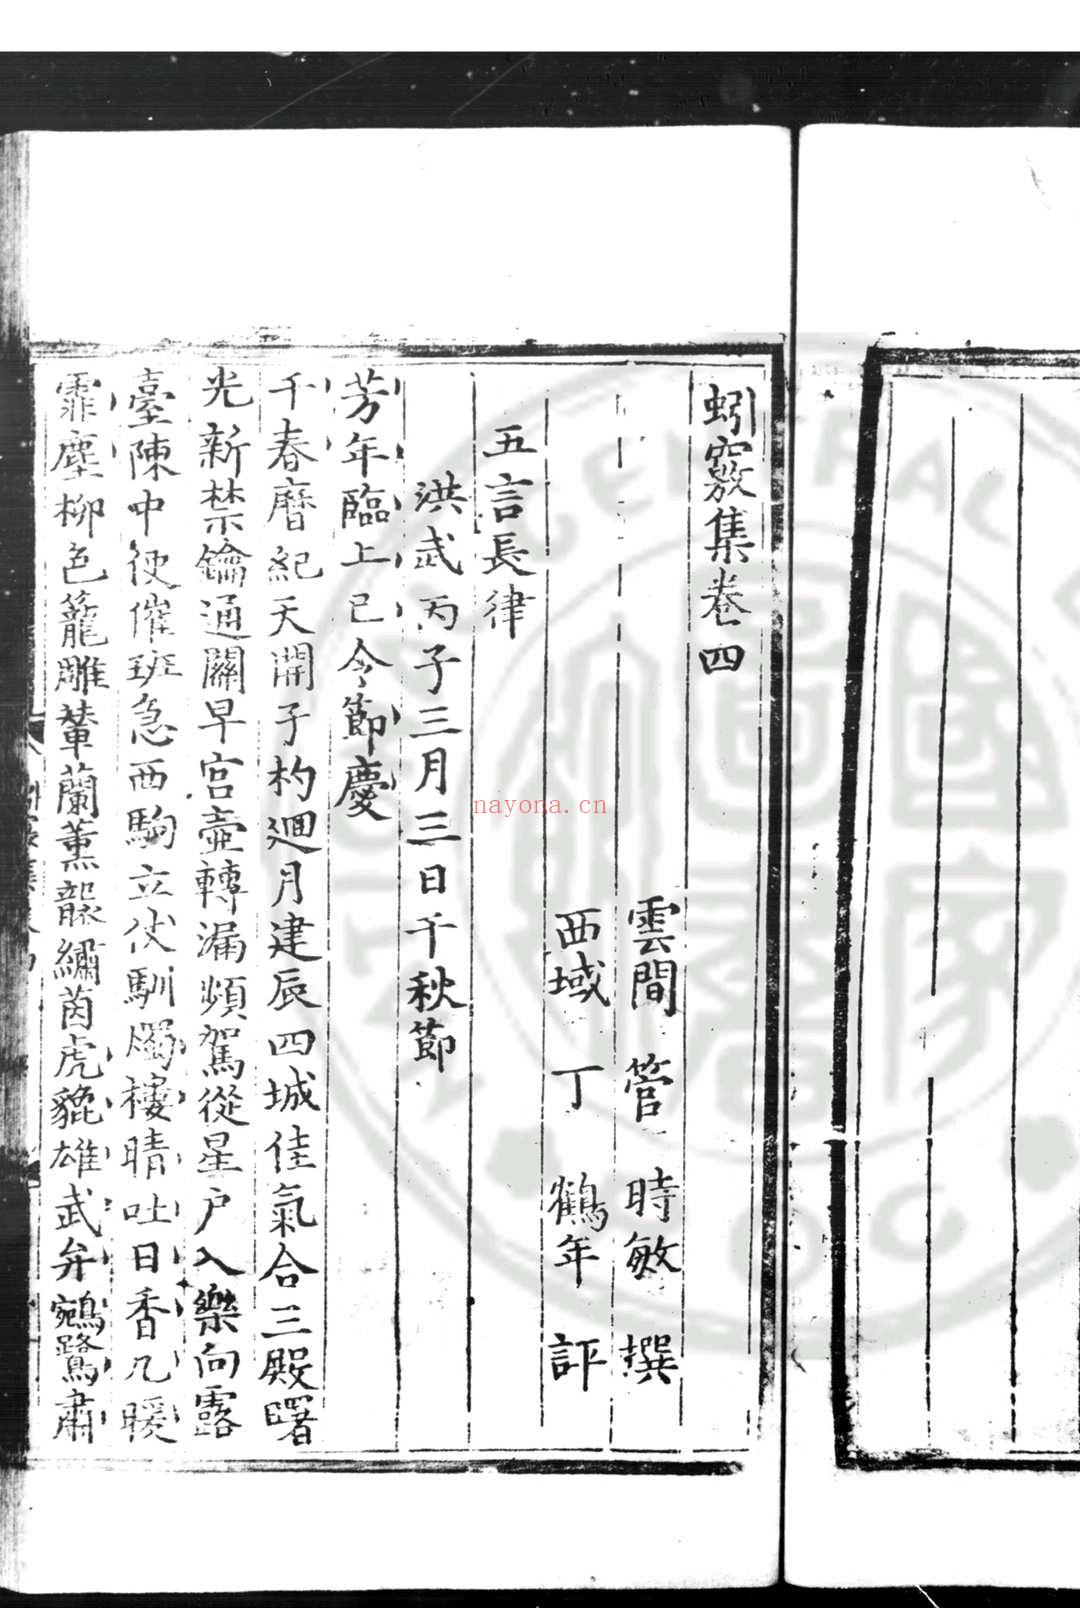 蚓窍集 (明)管时敏撰 (明)丁鹤年评 明永乐元年(1403)楚藩刊本